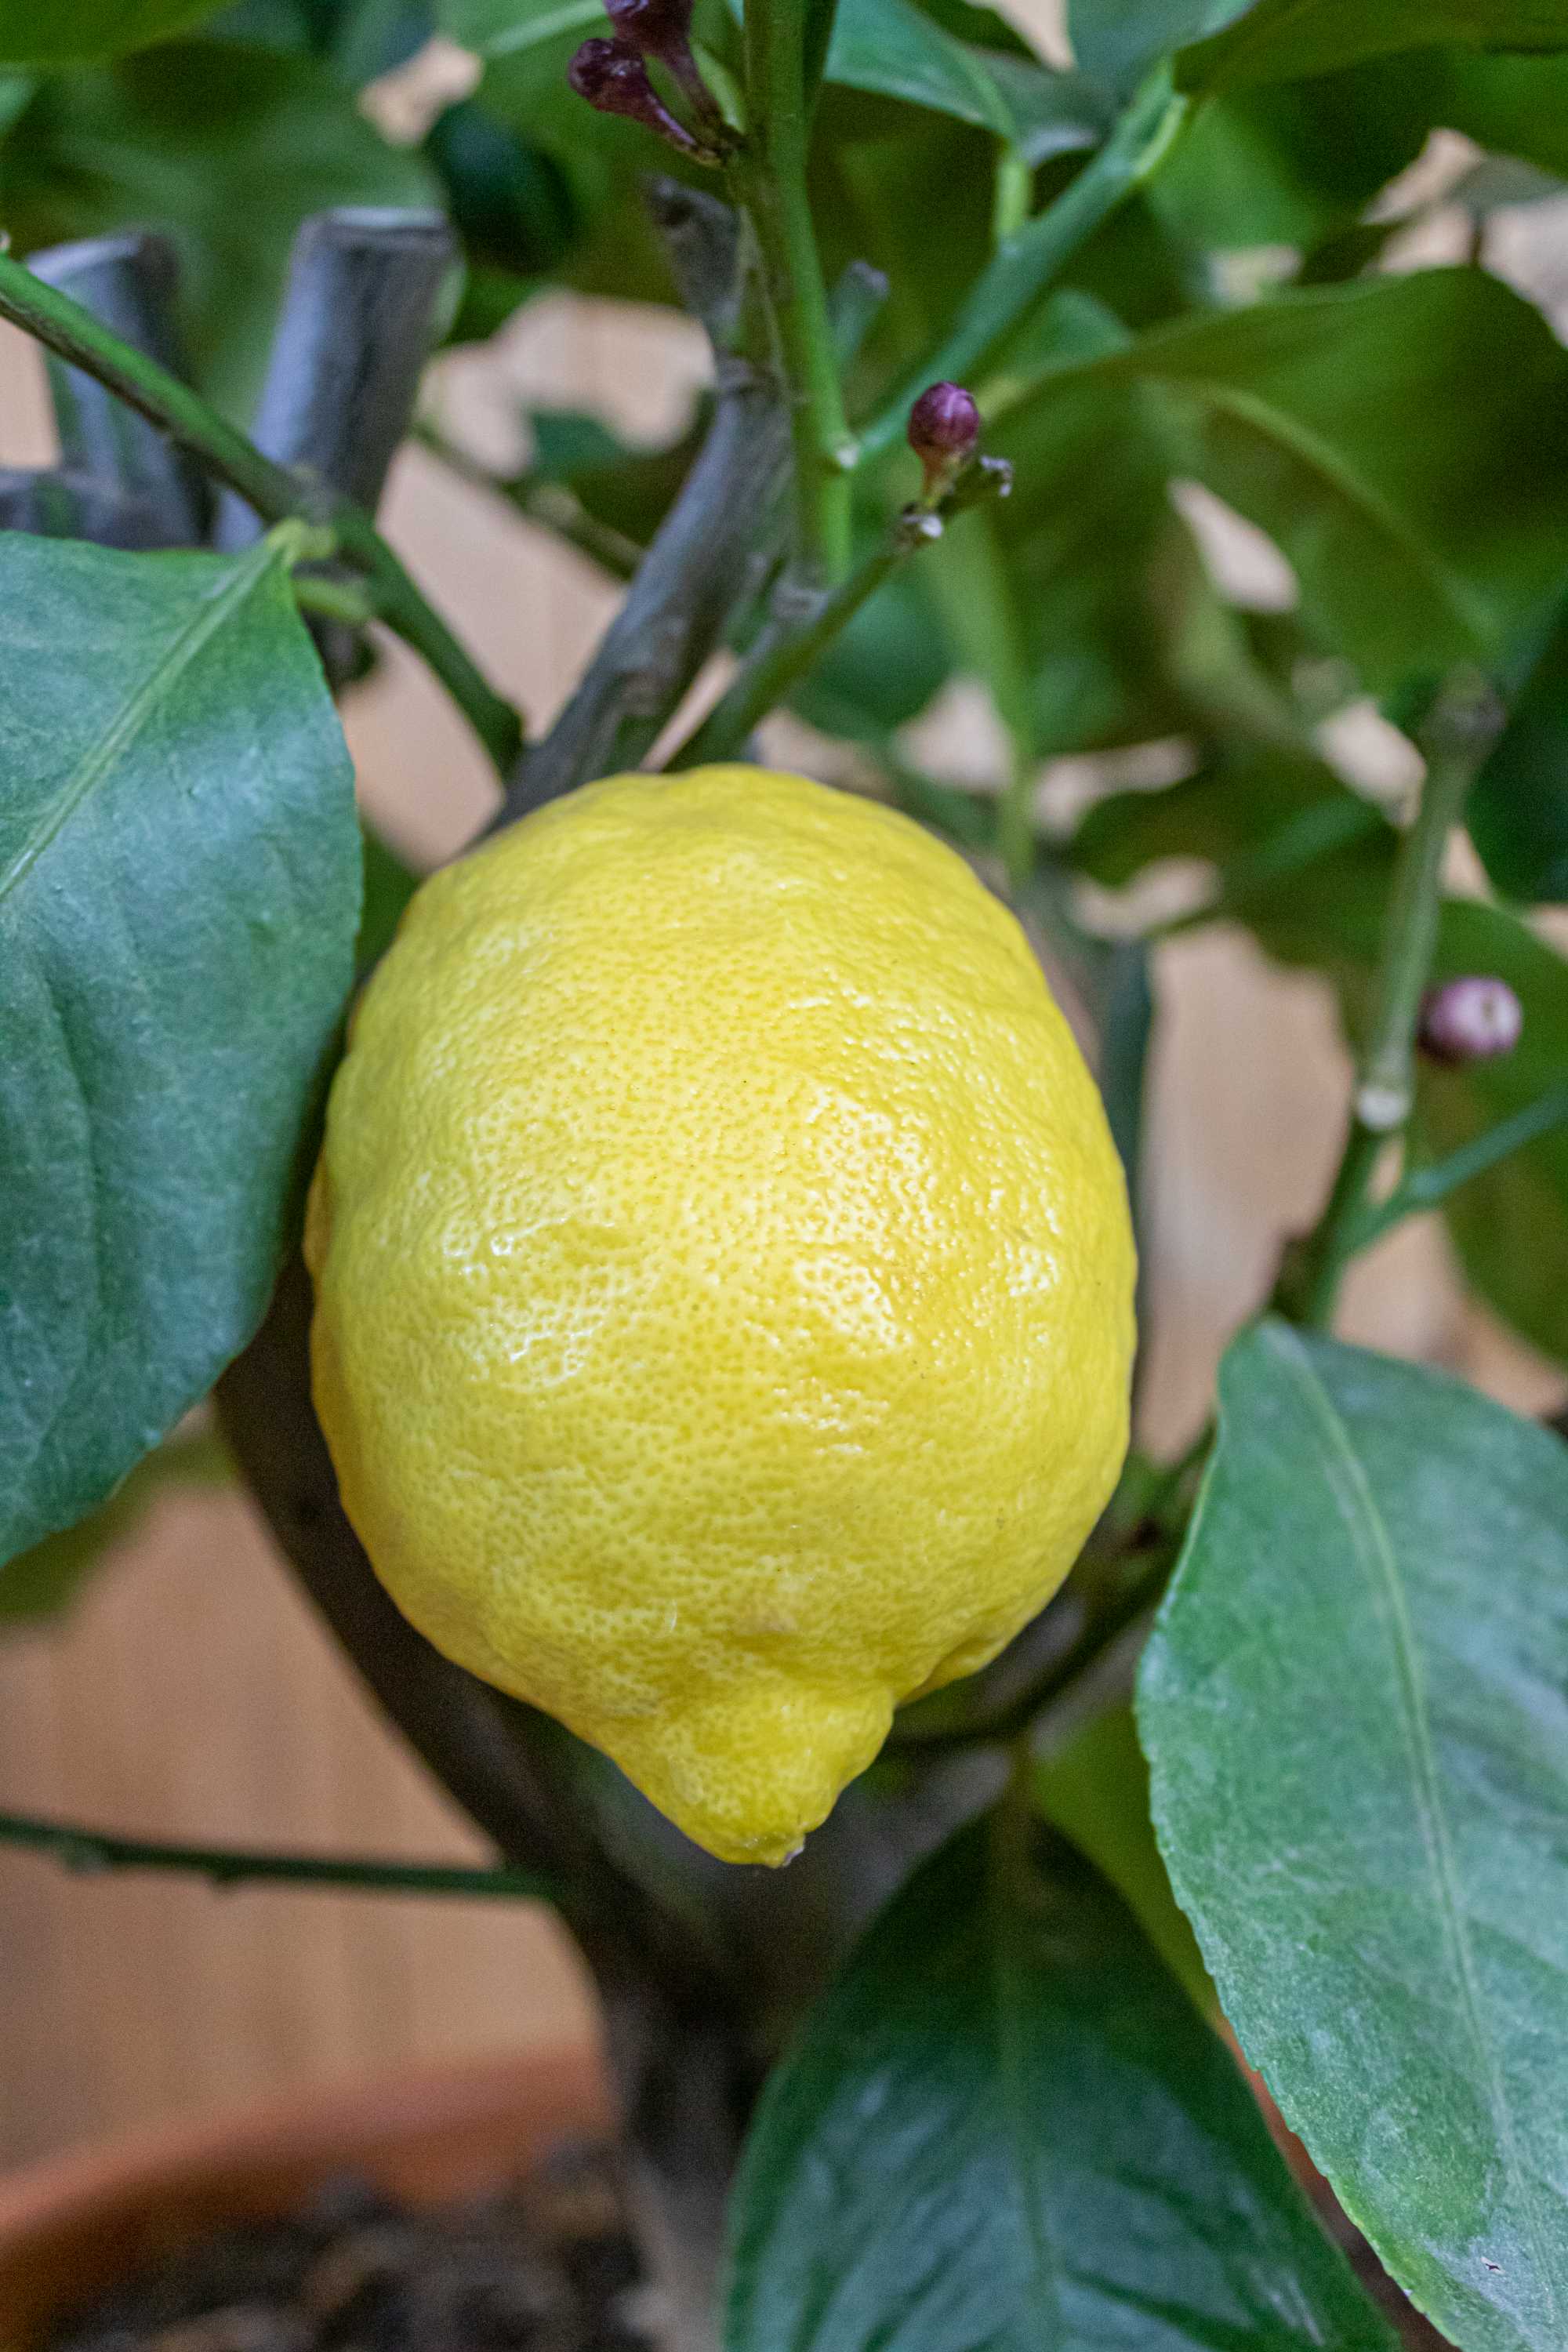 Zitronenbaum [Mezzo]  - Citrus limon - echte Zitrone